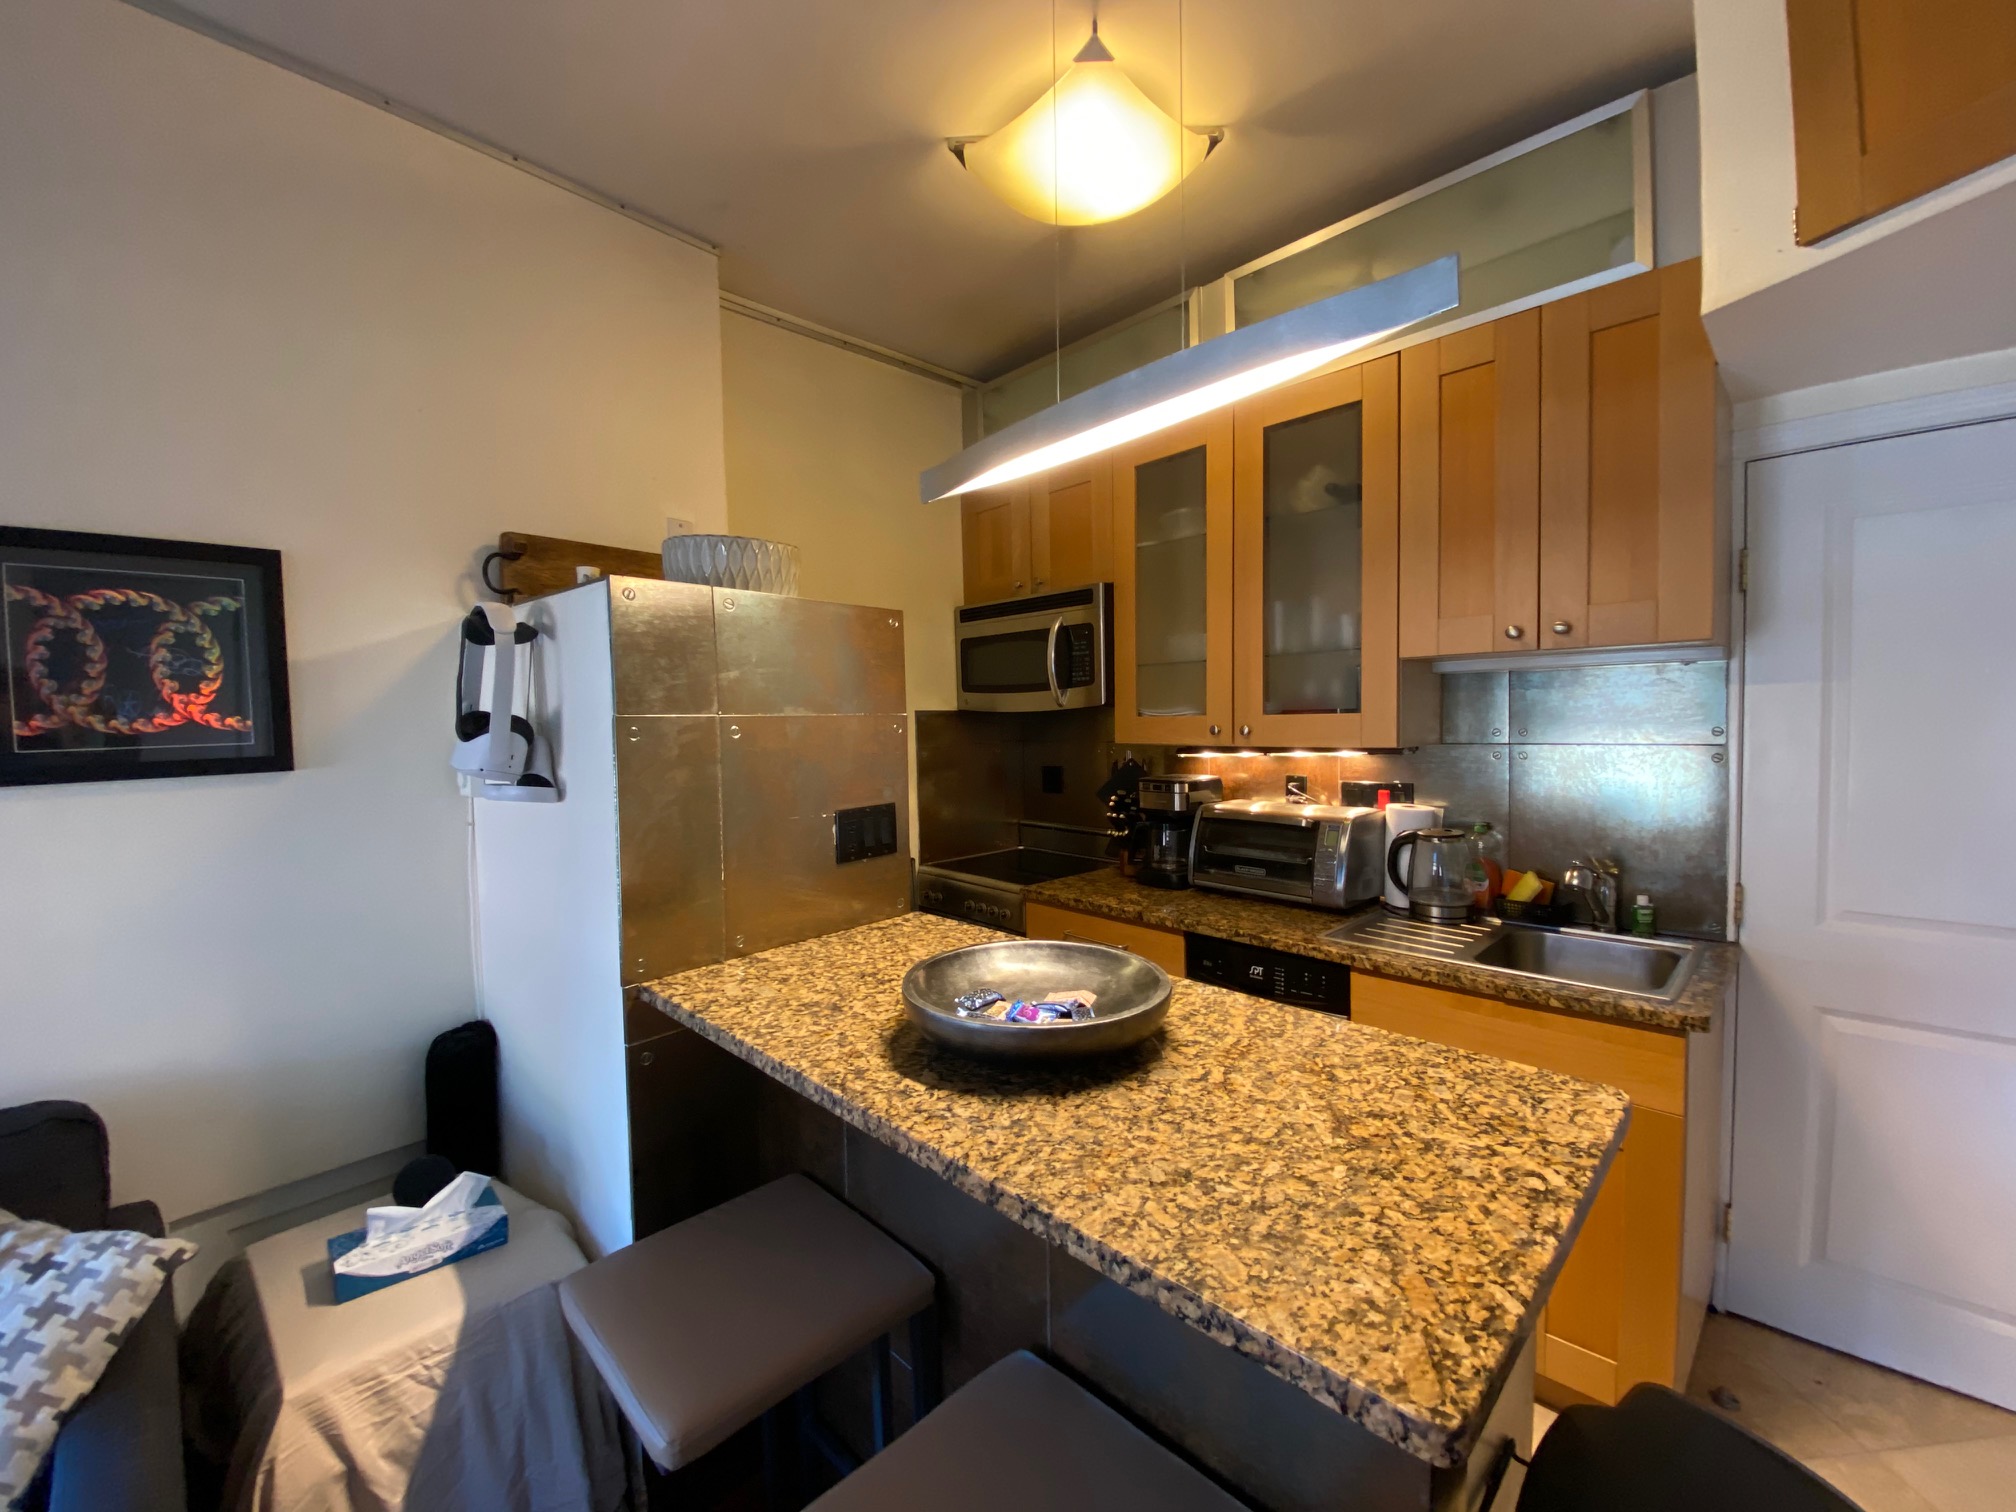 Photos of apartment on Dartmouth St.,Boston MA 02115